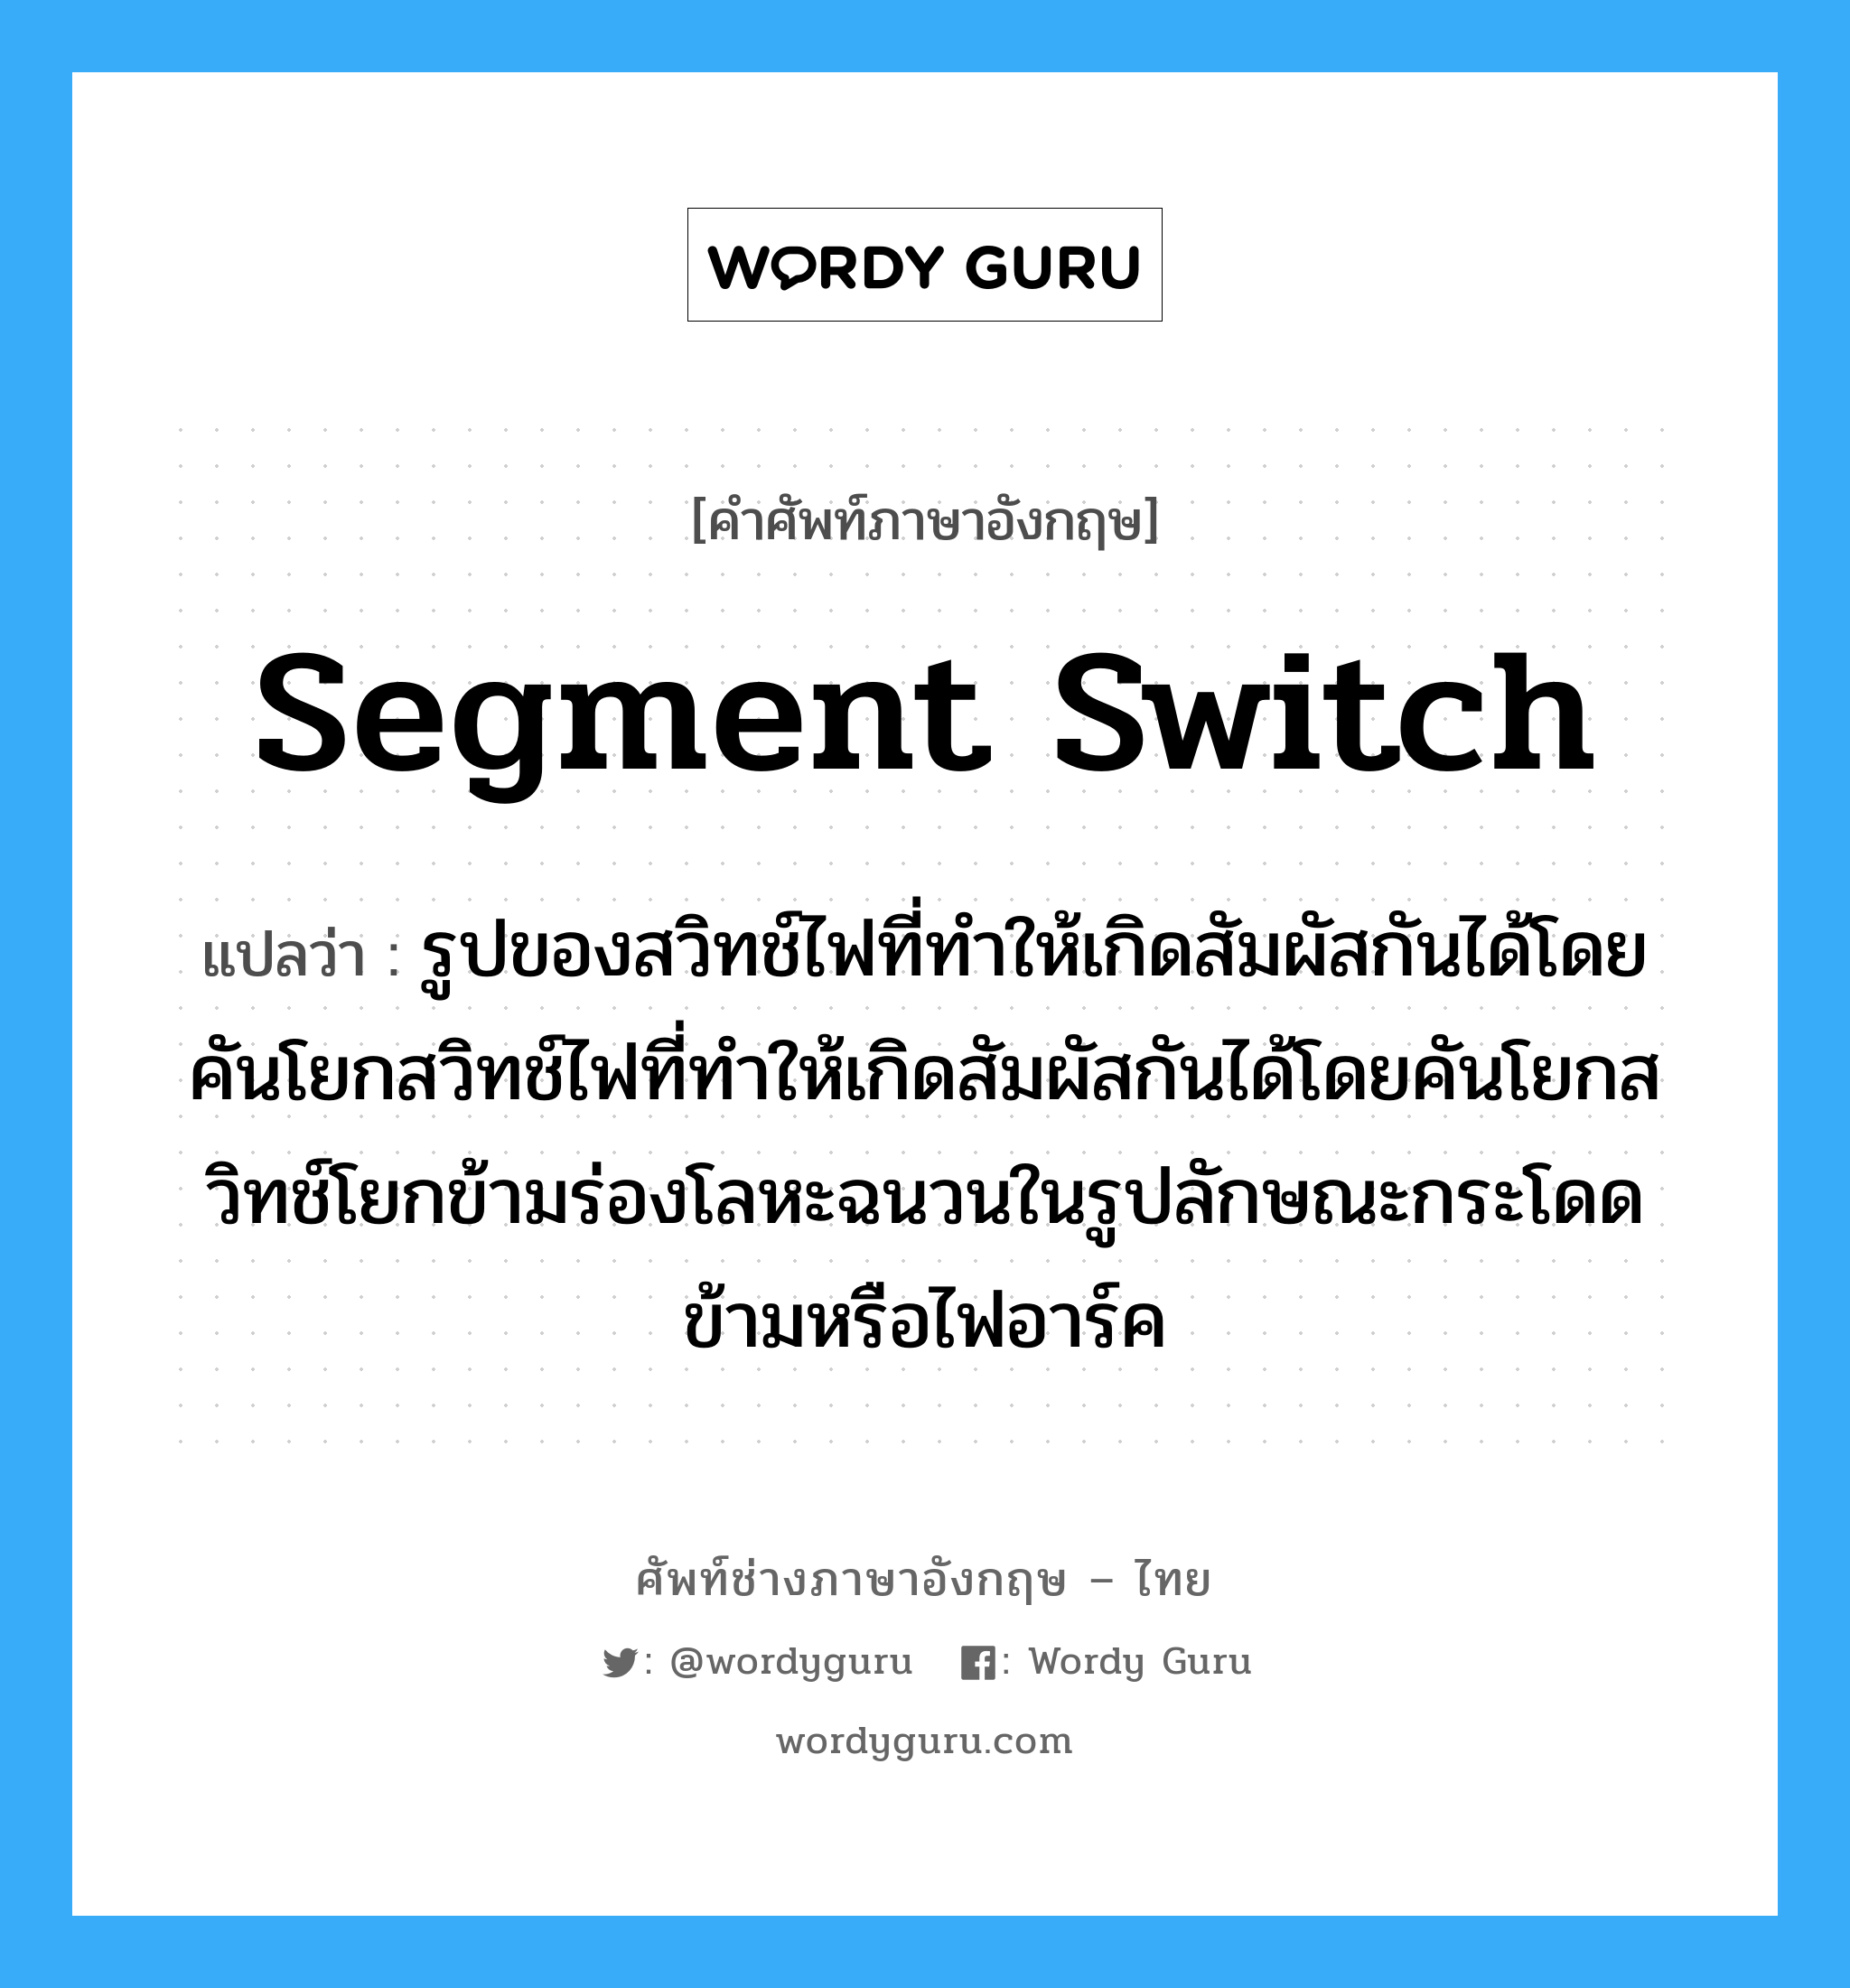 segment switch แปลว่า?, คำศัพท์ช่างภาษาอังกฤษ - ไทย segment switch คำศัพท์ภาษาอังกฤษ segment switch แปลว่า รูปของสวิทช์ไฟที่ทำให้เกิดสัมผัสกันได้โดยคันโยกสวิทช์ไฟที่ทำให้เกิดสัมผัสกันได้โดยคันโยกสวิทช์โยกข้ามร่องโลหะฉนวนในรูปลักษณะกระโดดข้ามหรือไฟอาร์ค